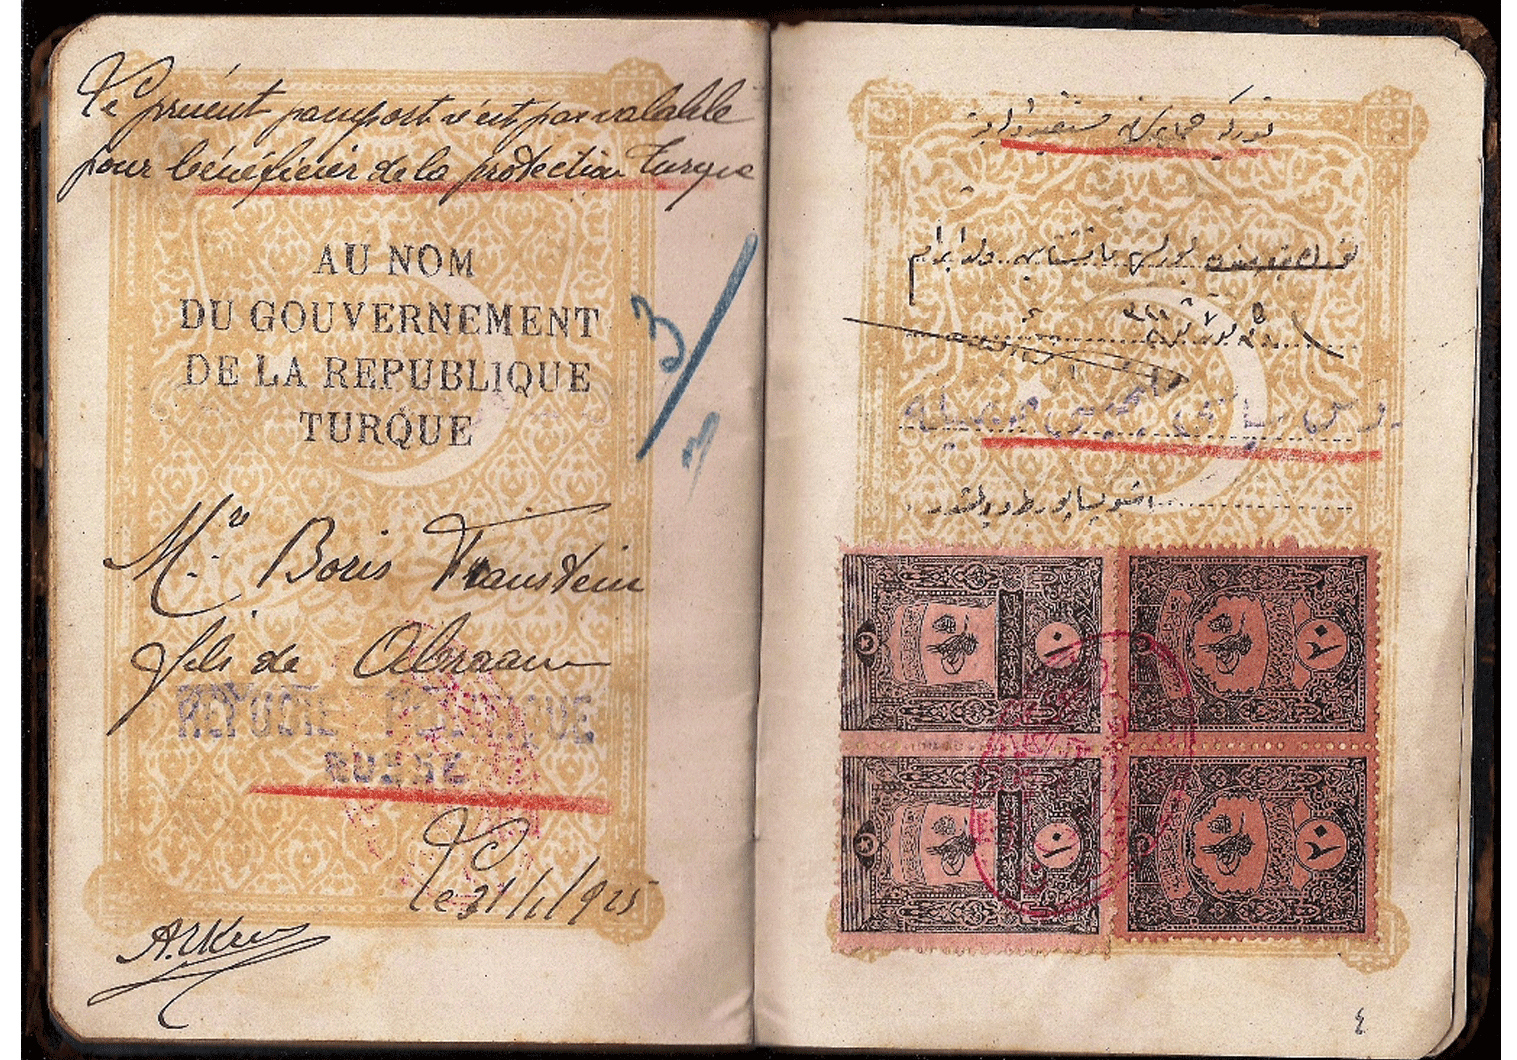 1925 Turkish passport